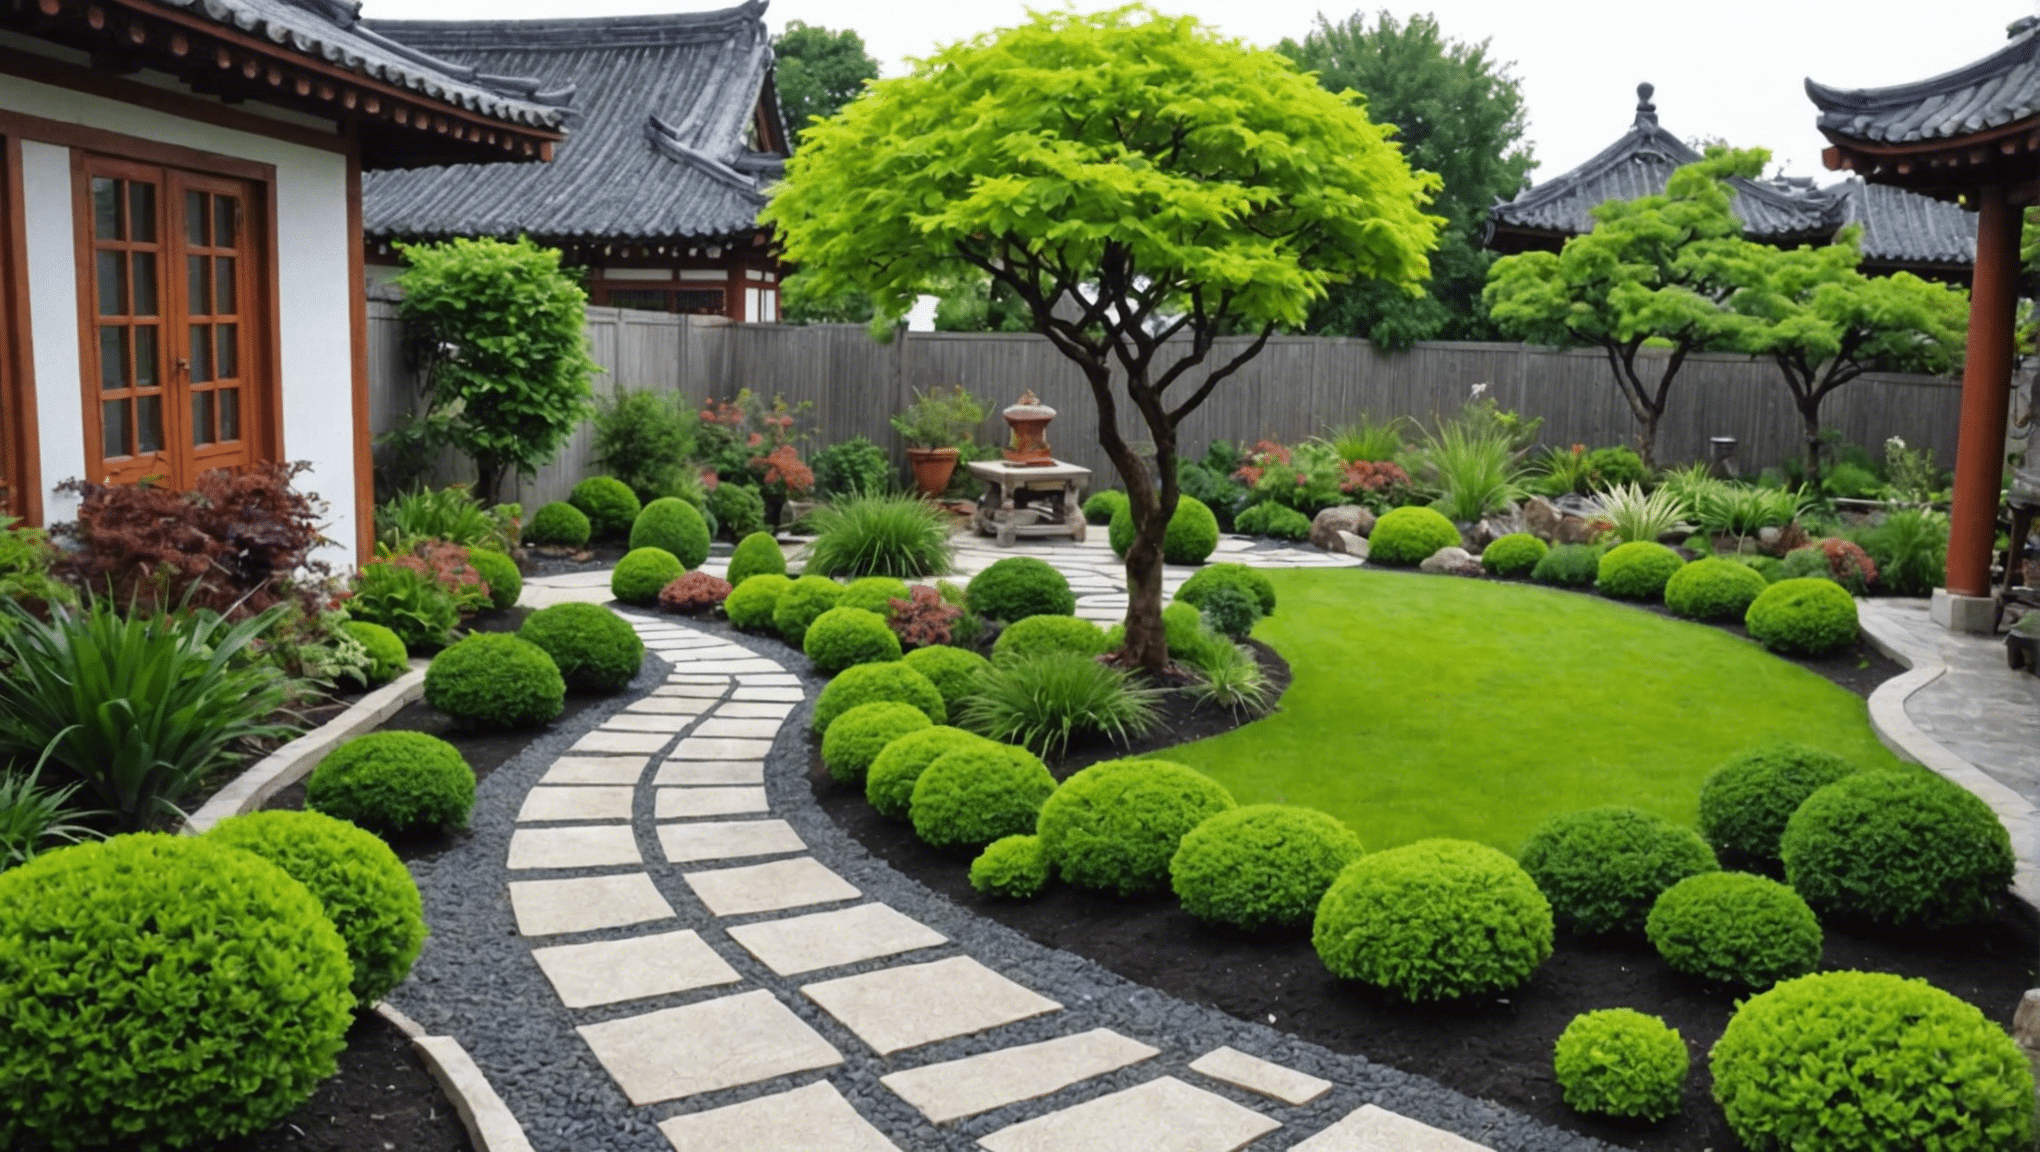 Entdecken Sie mit unseren Expertentipps und Inspirationen kreative und inspirierende asiatische Gartenideen für Ihren Außenbereich. Von traditionellen japanischen Gärten bis hin zu modernen Zen-Designs finden Sie die perfekte Inspiration für Ihre Oase im Freien.